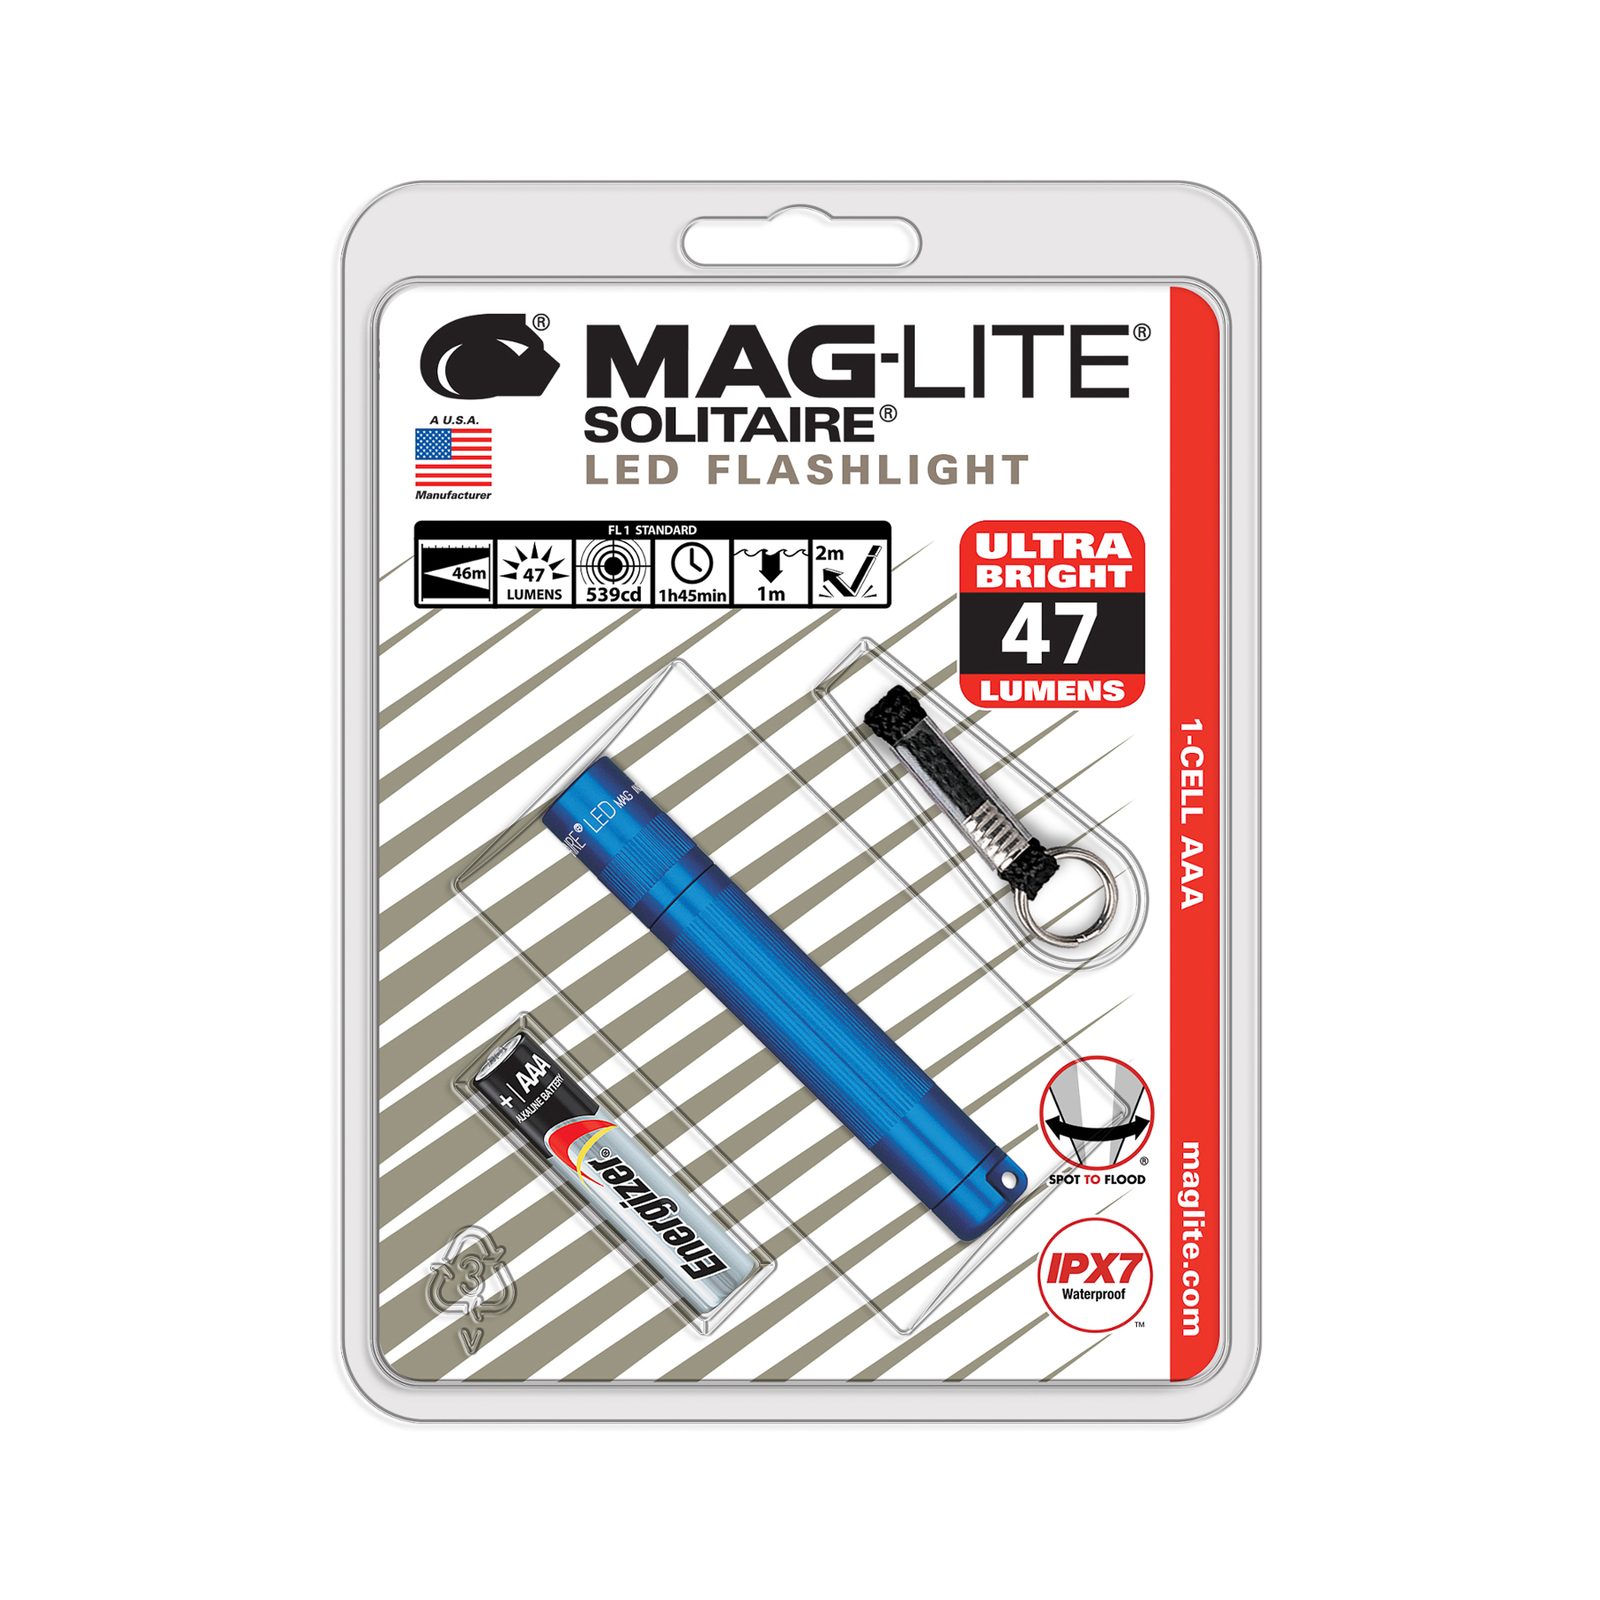 Maglite LED taskulamppu Solitaire, 1-kennoinen AAA, sininen